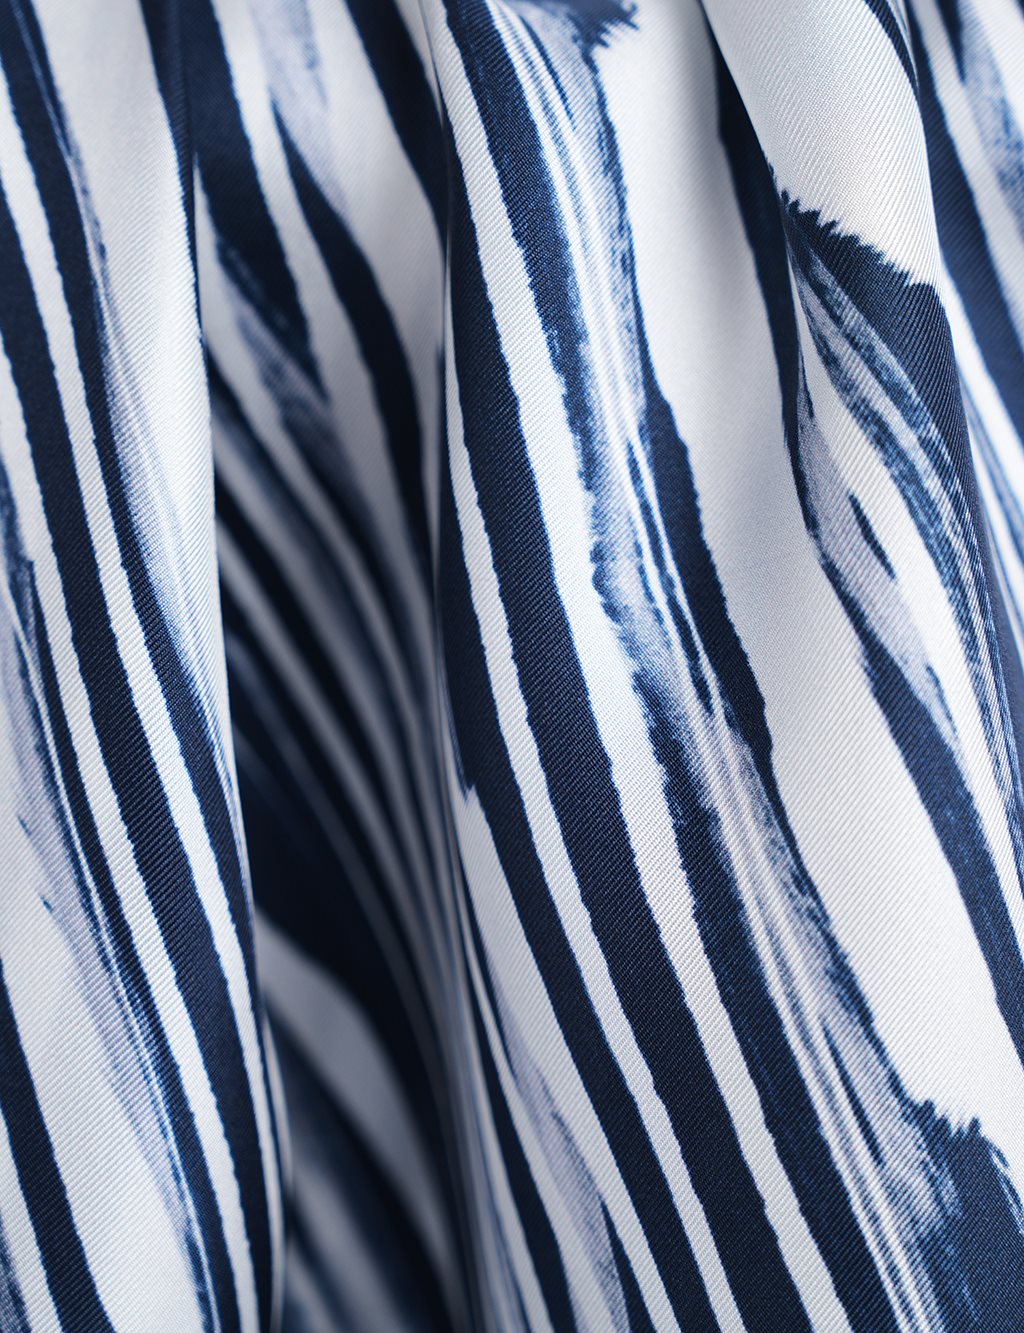 Zebra Patterned Silk Scarf Navy Blue